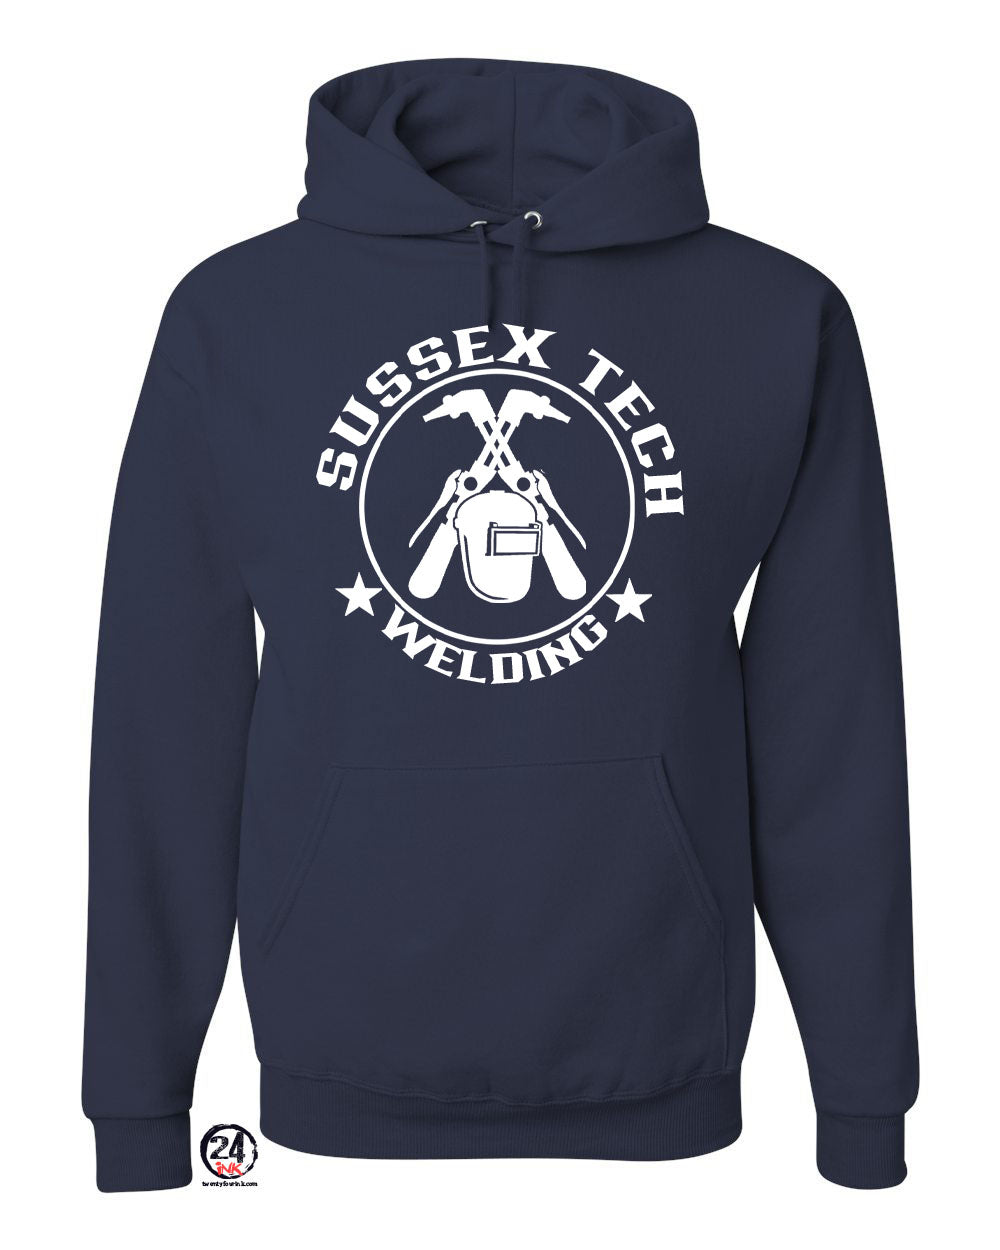 Sussex Tech Welding Design 6 Hooded Sweatshirt